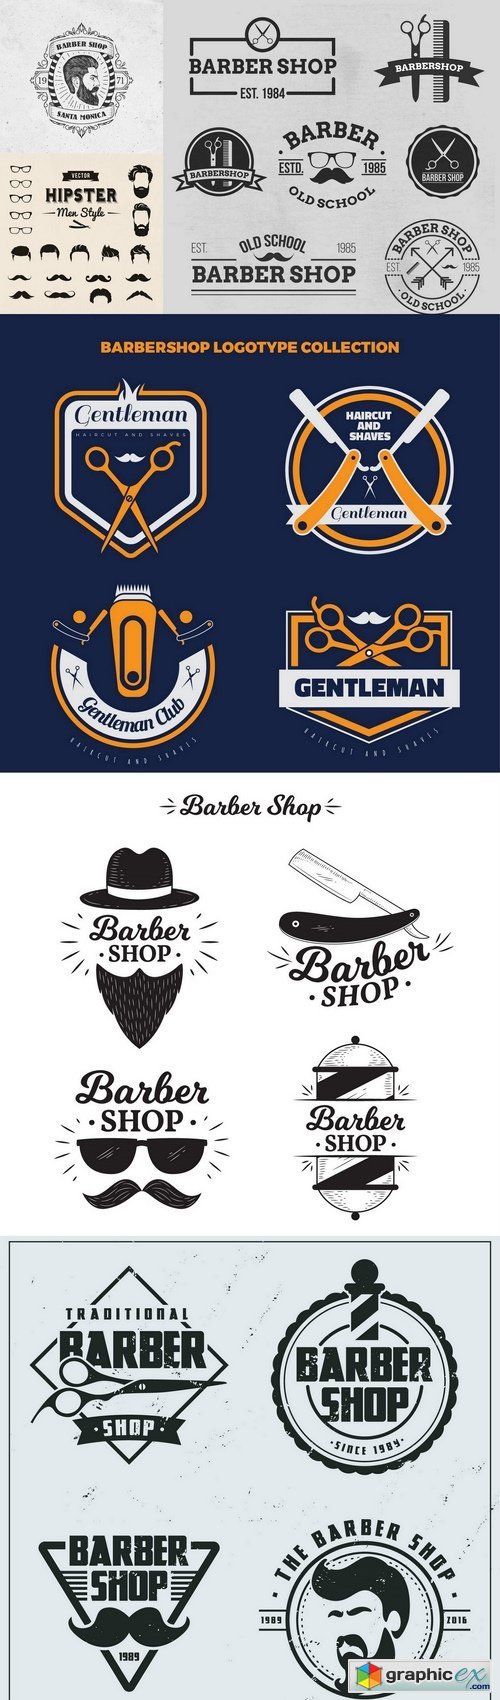 Vintage flat barber shop logos